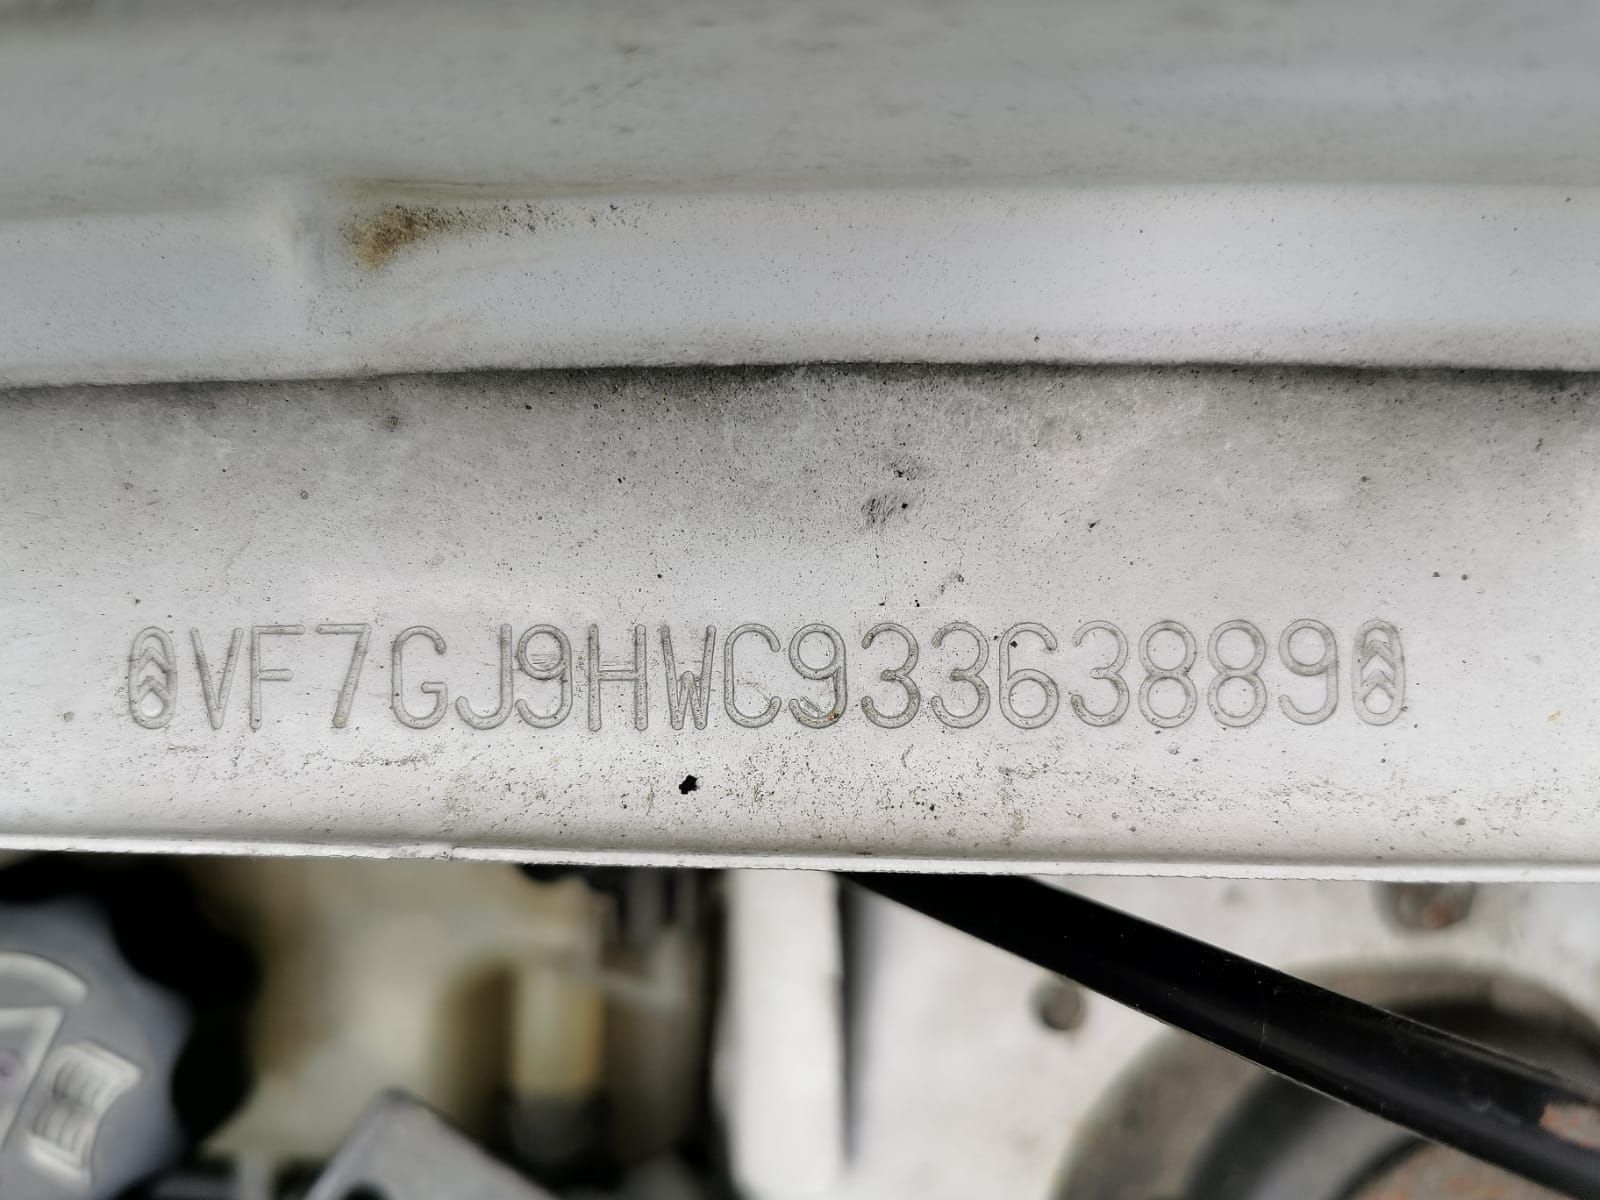 Б/У 9806252980 Стекло двери задней правой Citroen Berlingo 1 (1996-2012)  Проверочный срок устанавли bu6a1907033 Б/У запчасти